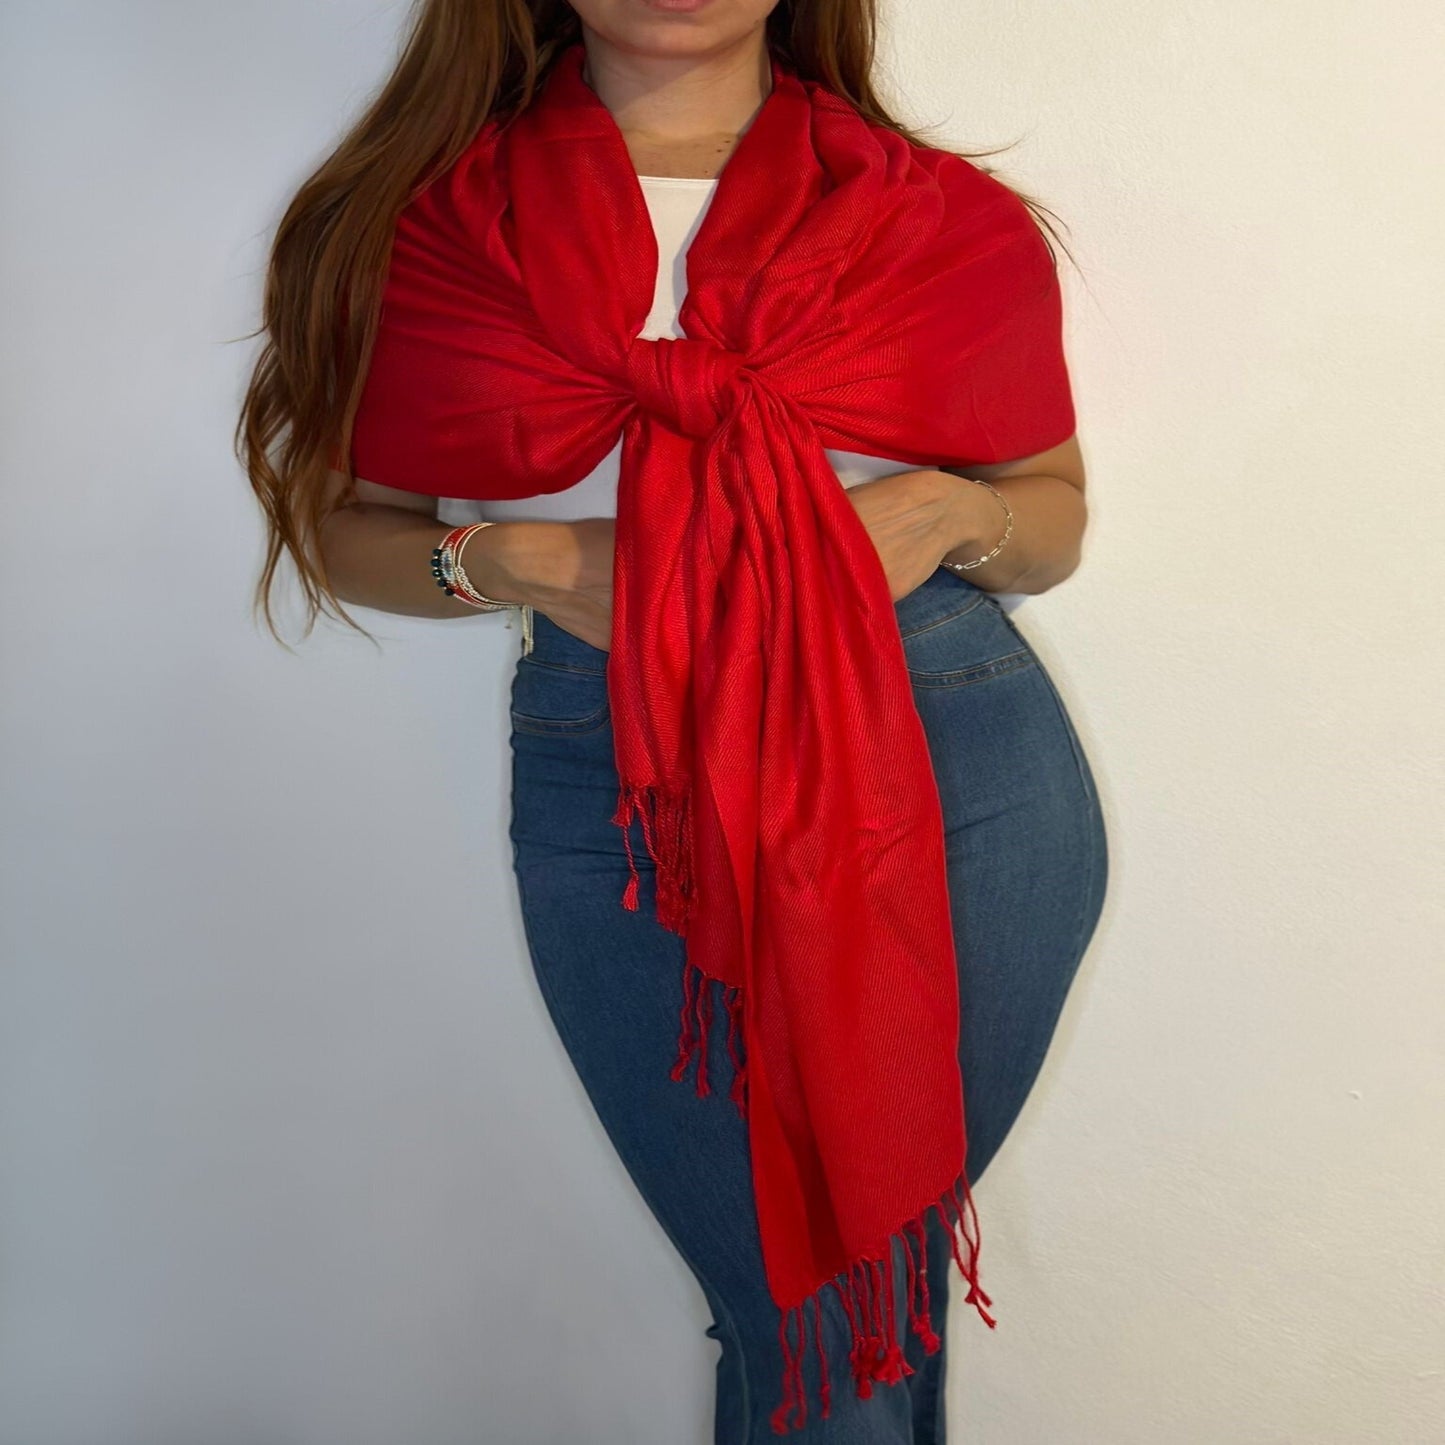 Medio Cuerpo de Joven Mujer Luciendo Elegante Pashmina Color Roja/Pololena & Co.